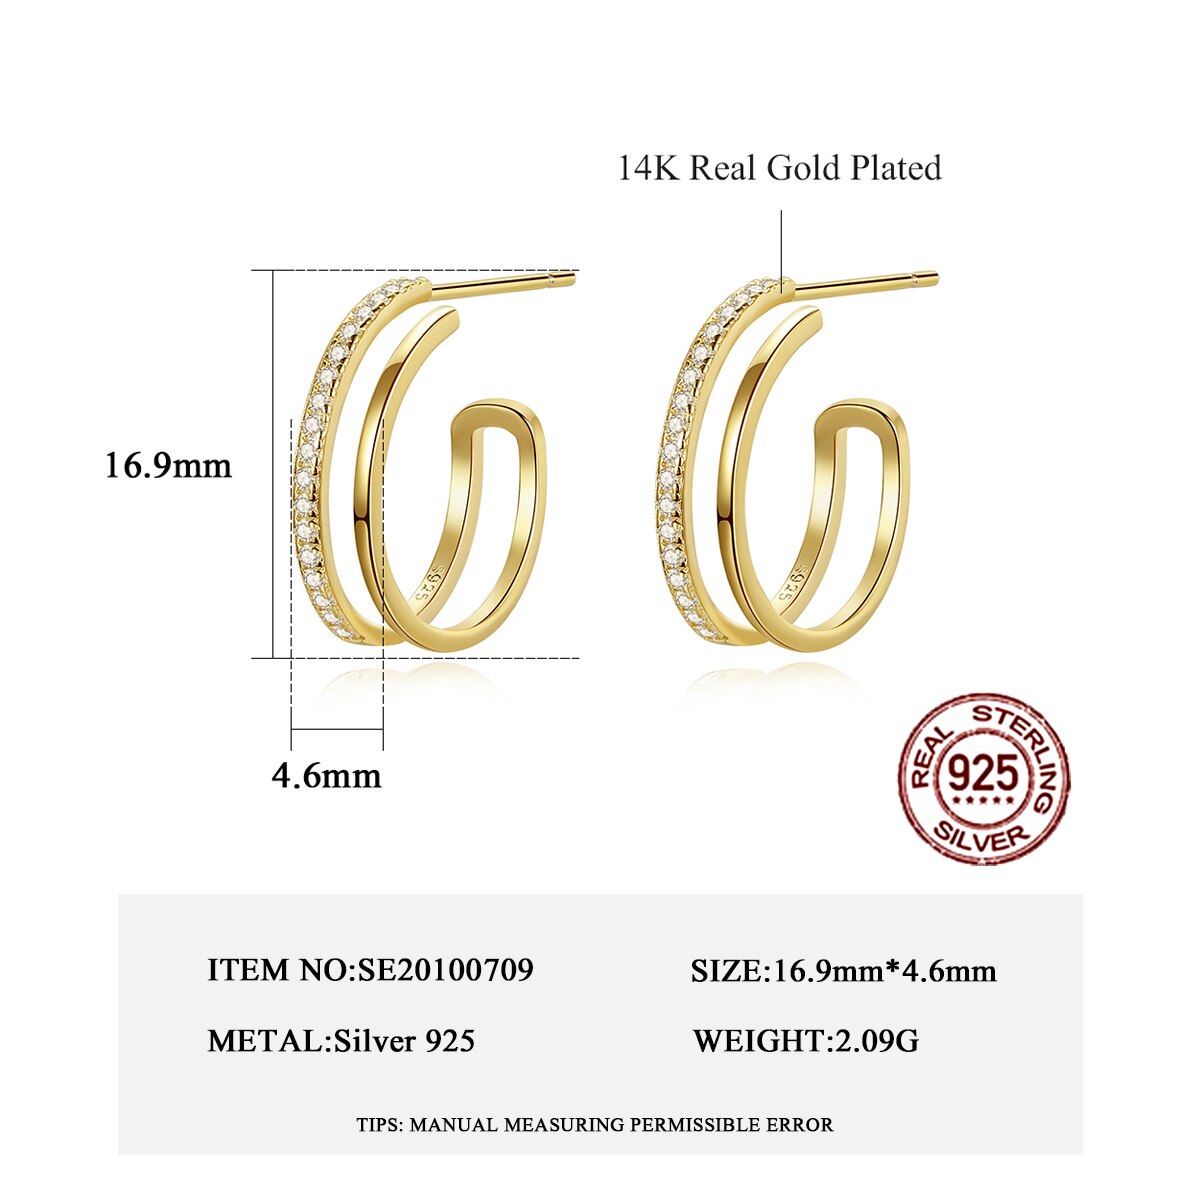  Zirconia Hoop Earrings HuggieCubic Earrings 925 Sterling Silver Gold Plated- Magic Jewellers 